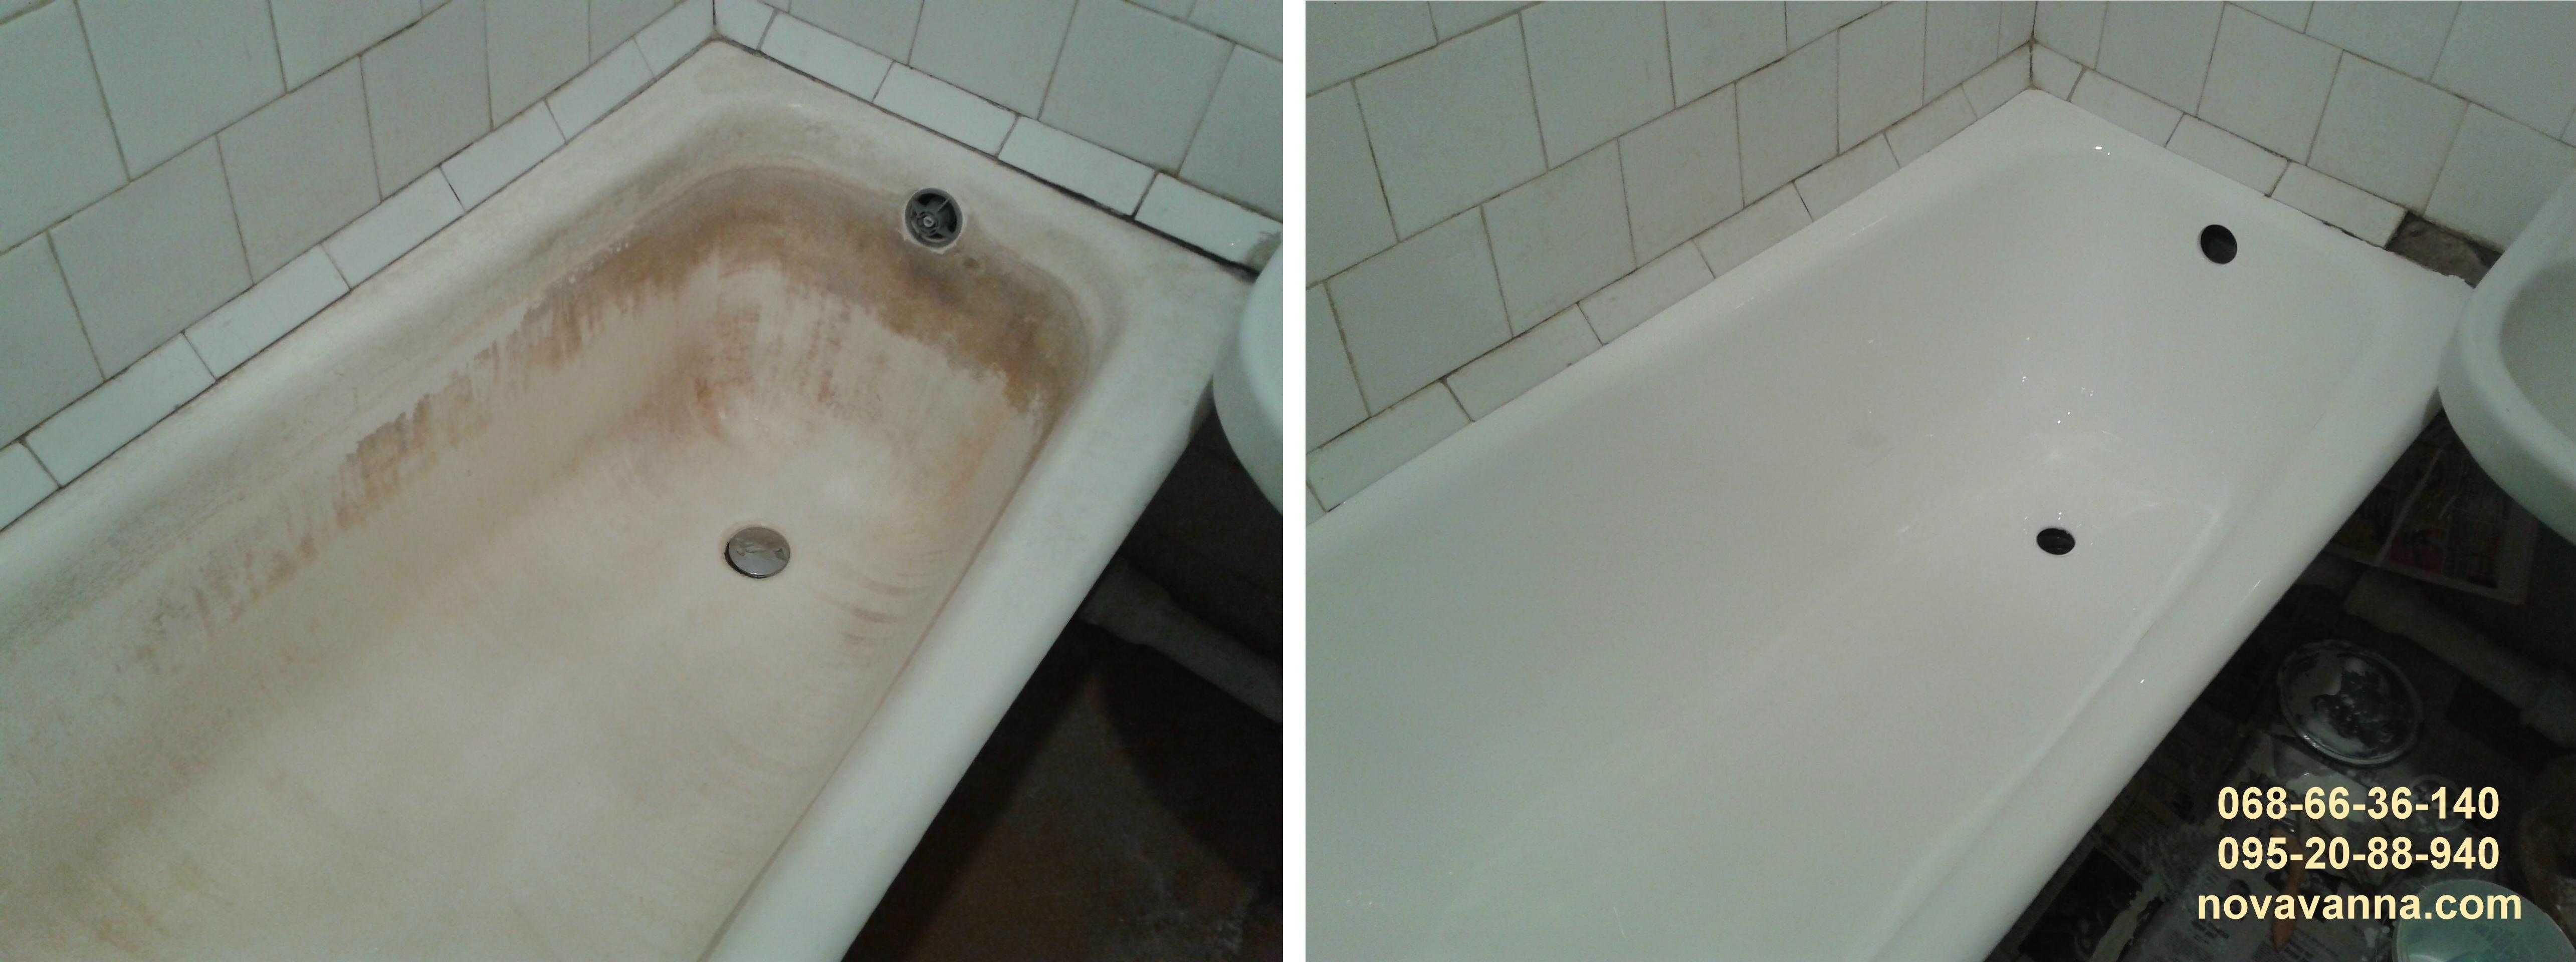 Реставрация ванн КАМЕНСКОЕ. Реставрация ванн с Гарантией. Качественно